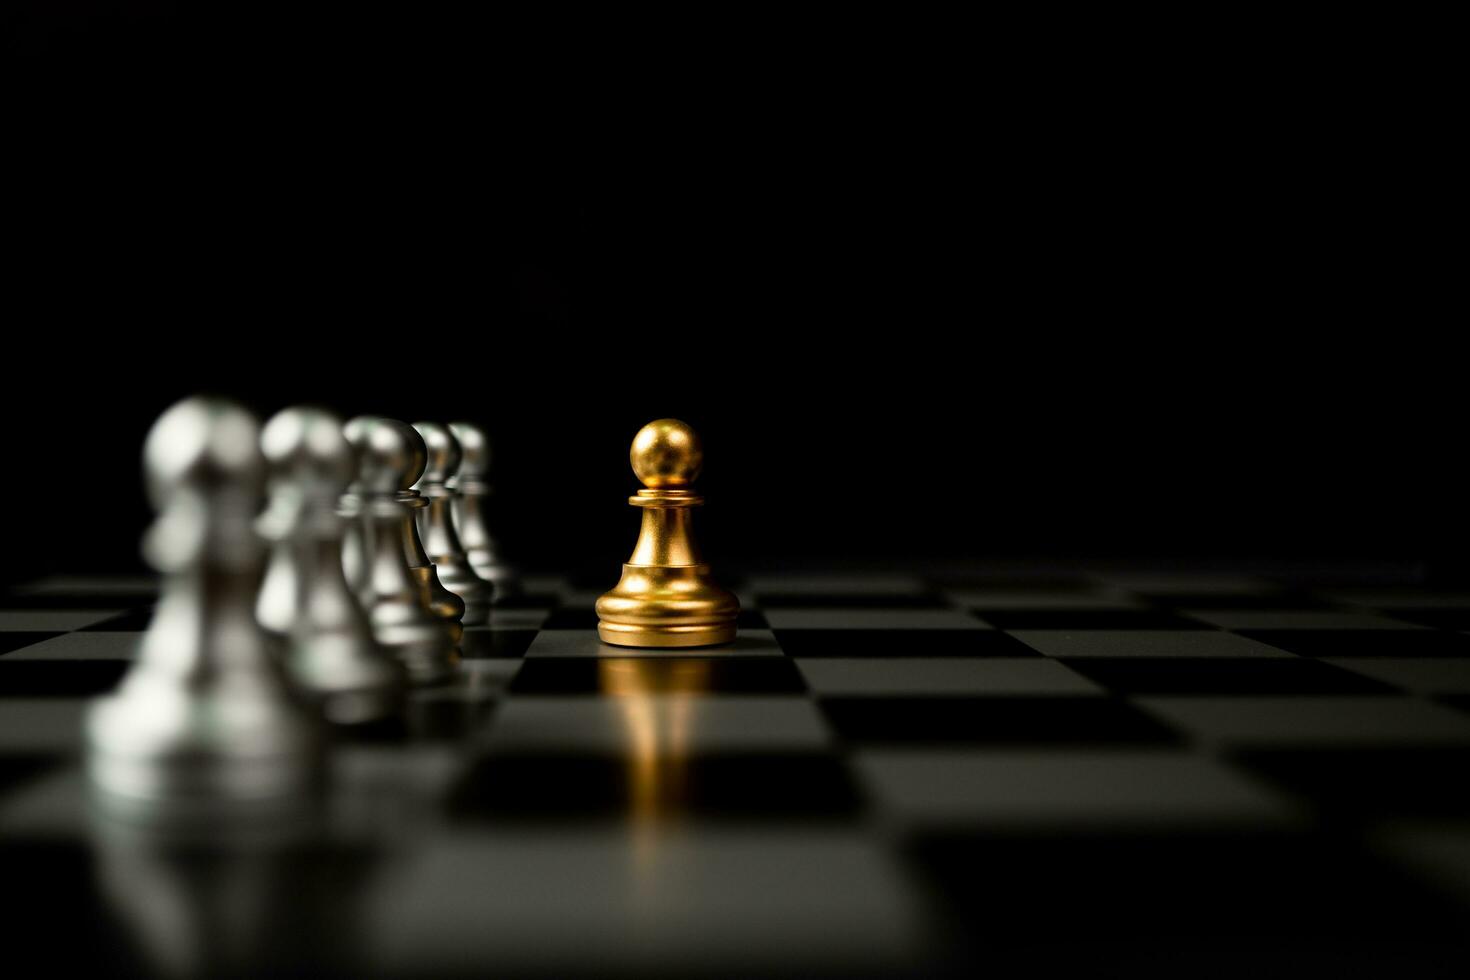 gouden schaakpion die voor ander schaak staat, het concept van een leider moet moed en uitdaging hebben in de competitie, leiderschap en zakelijke visie voor een overwinning in zakelijke games foto